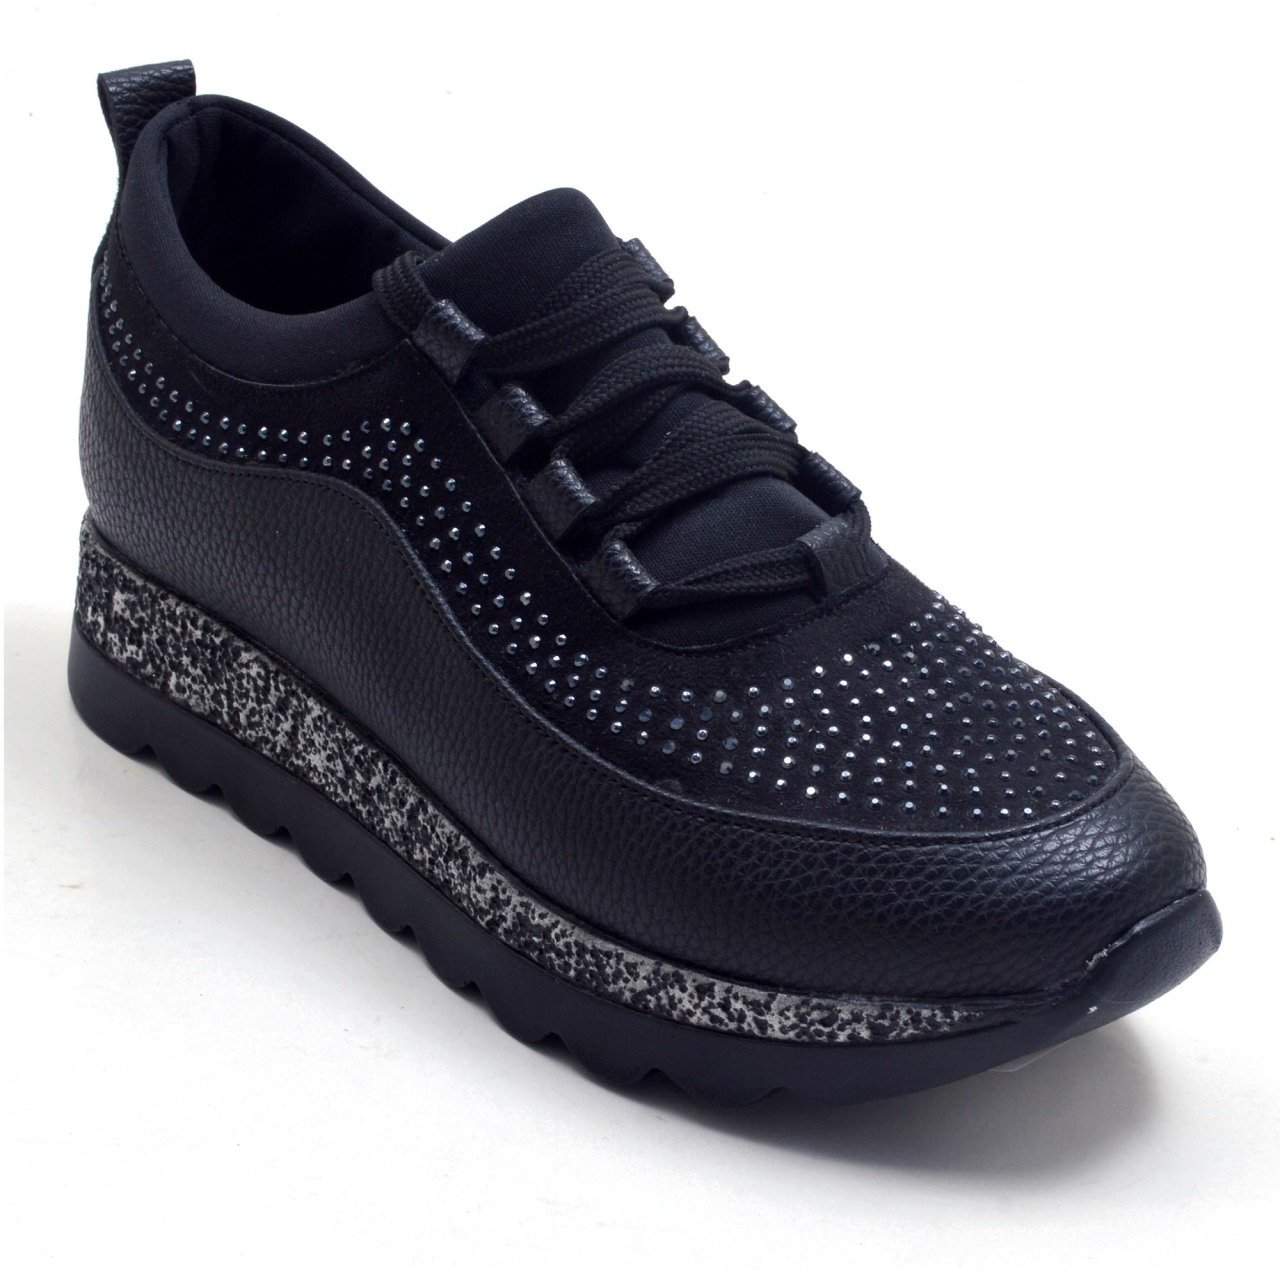 431-GUD Taşlı Spor Spor Model Kadın Ayakkabı - Siyah